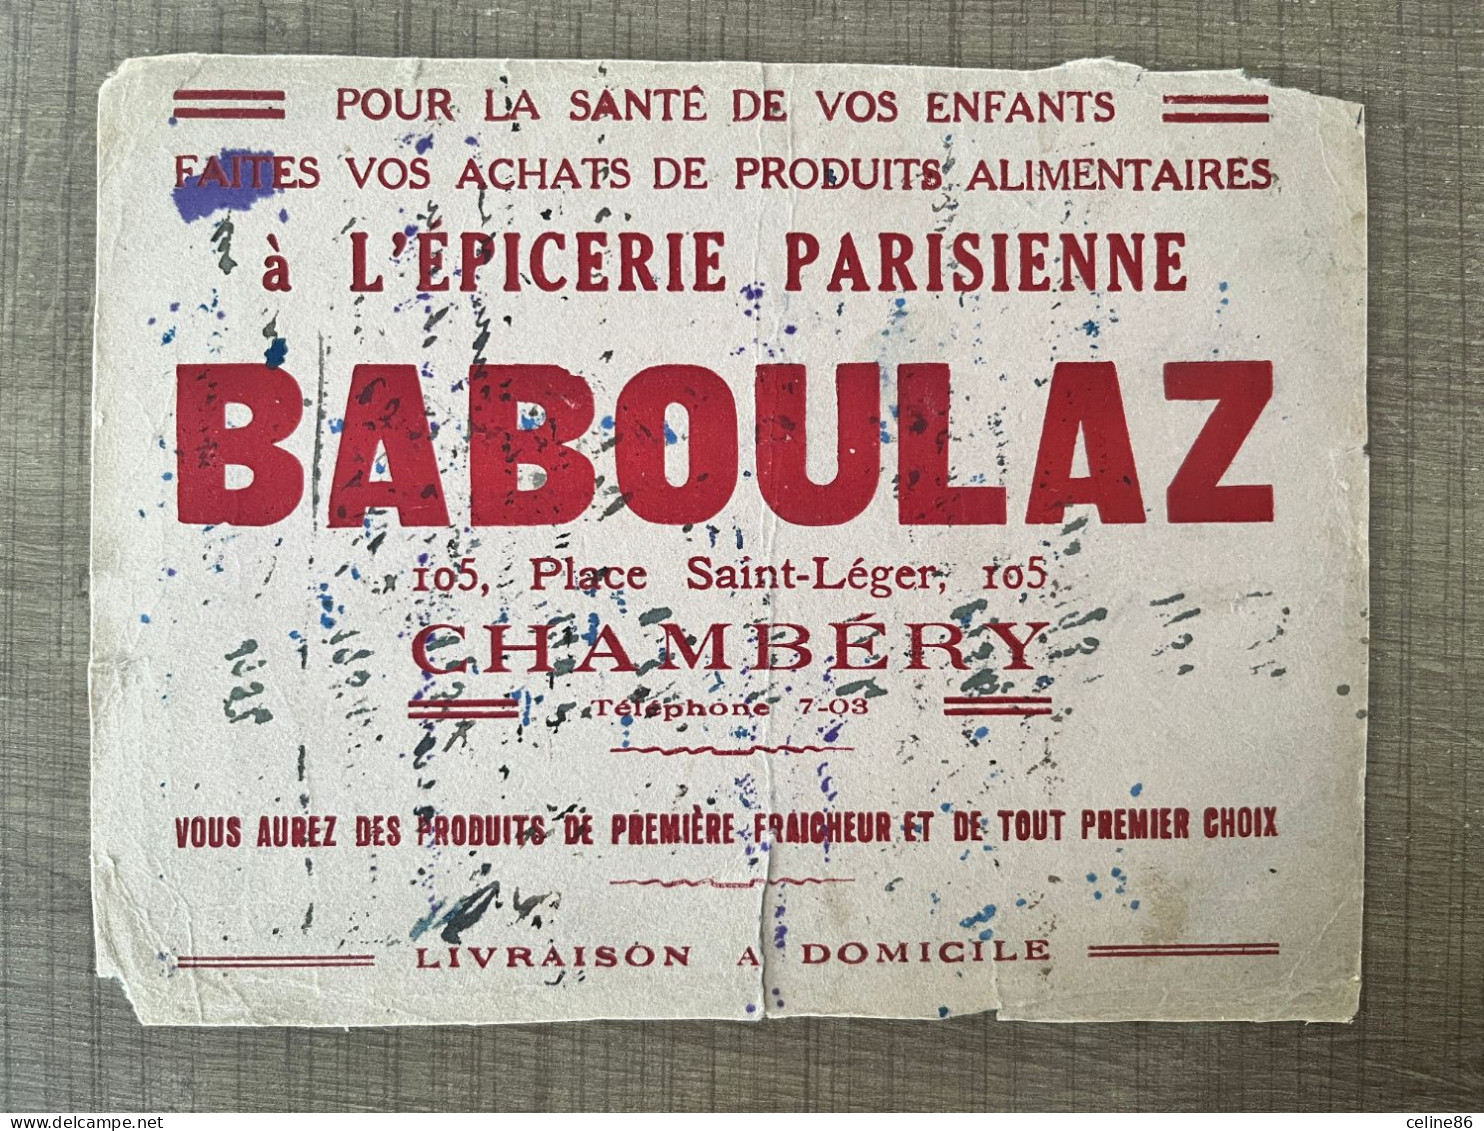 épicerie Parisienne BABOULAZ - Levensmiddelen